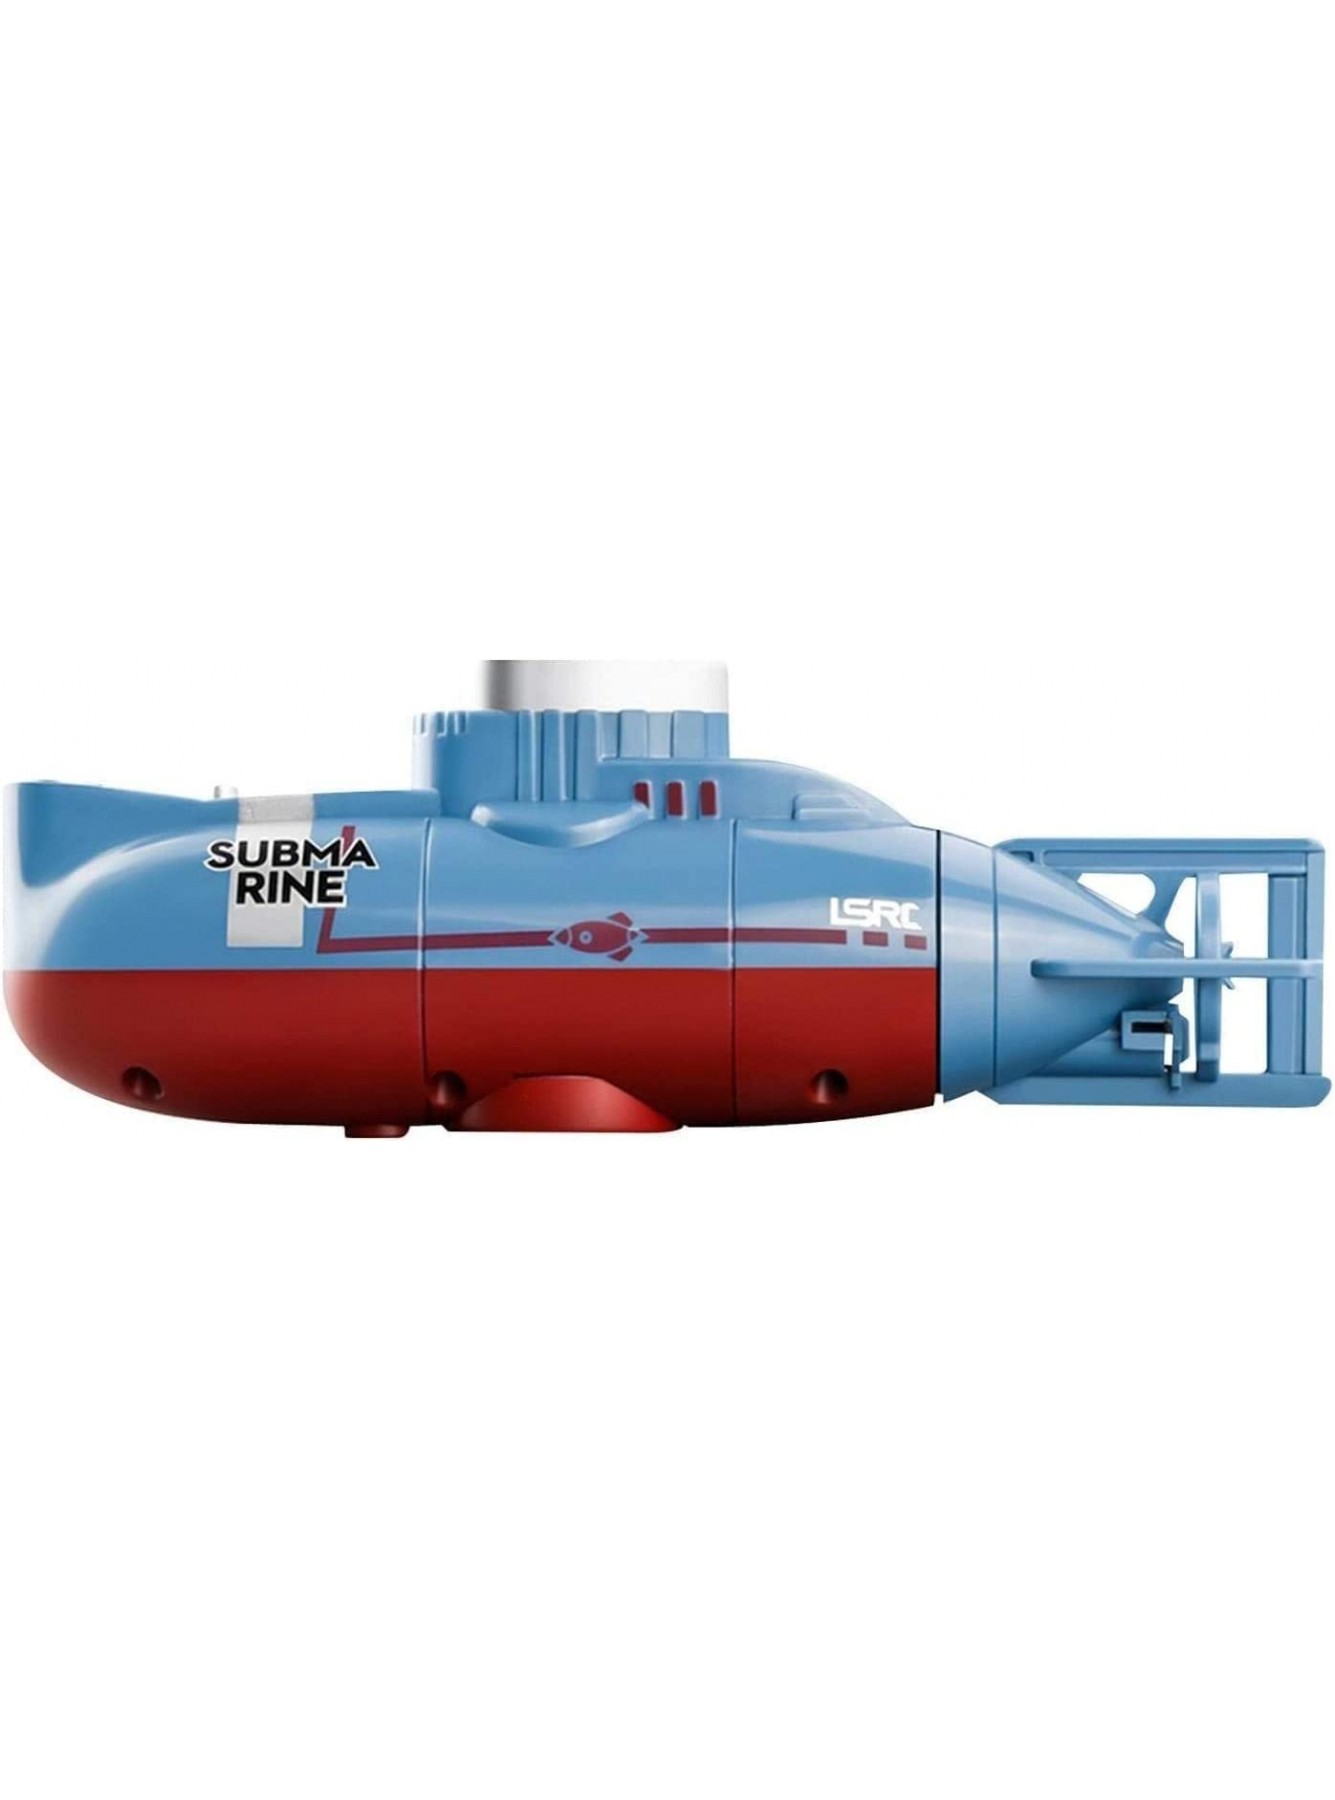 UimimiU Simulation U-Boot-Fernbedienungsboot Radio-Kontroll-U-Boot-Unterwasser-Drohne Rc Boot for Kinder Mädchen Ausschalten der Funktion aus dem Wasser Hobbyspielzeug for Jungen 4-7 8-12 - B09MM1B1LY